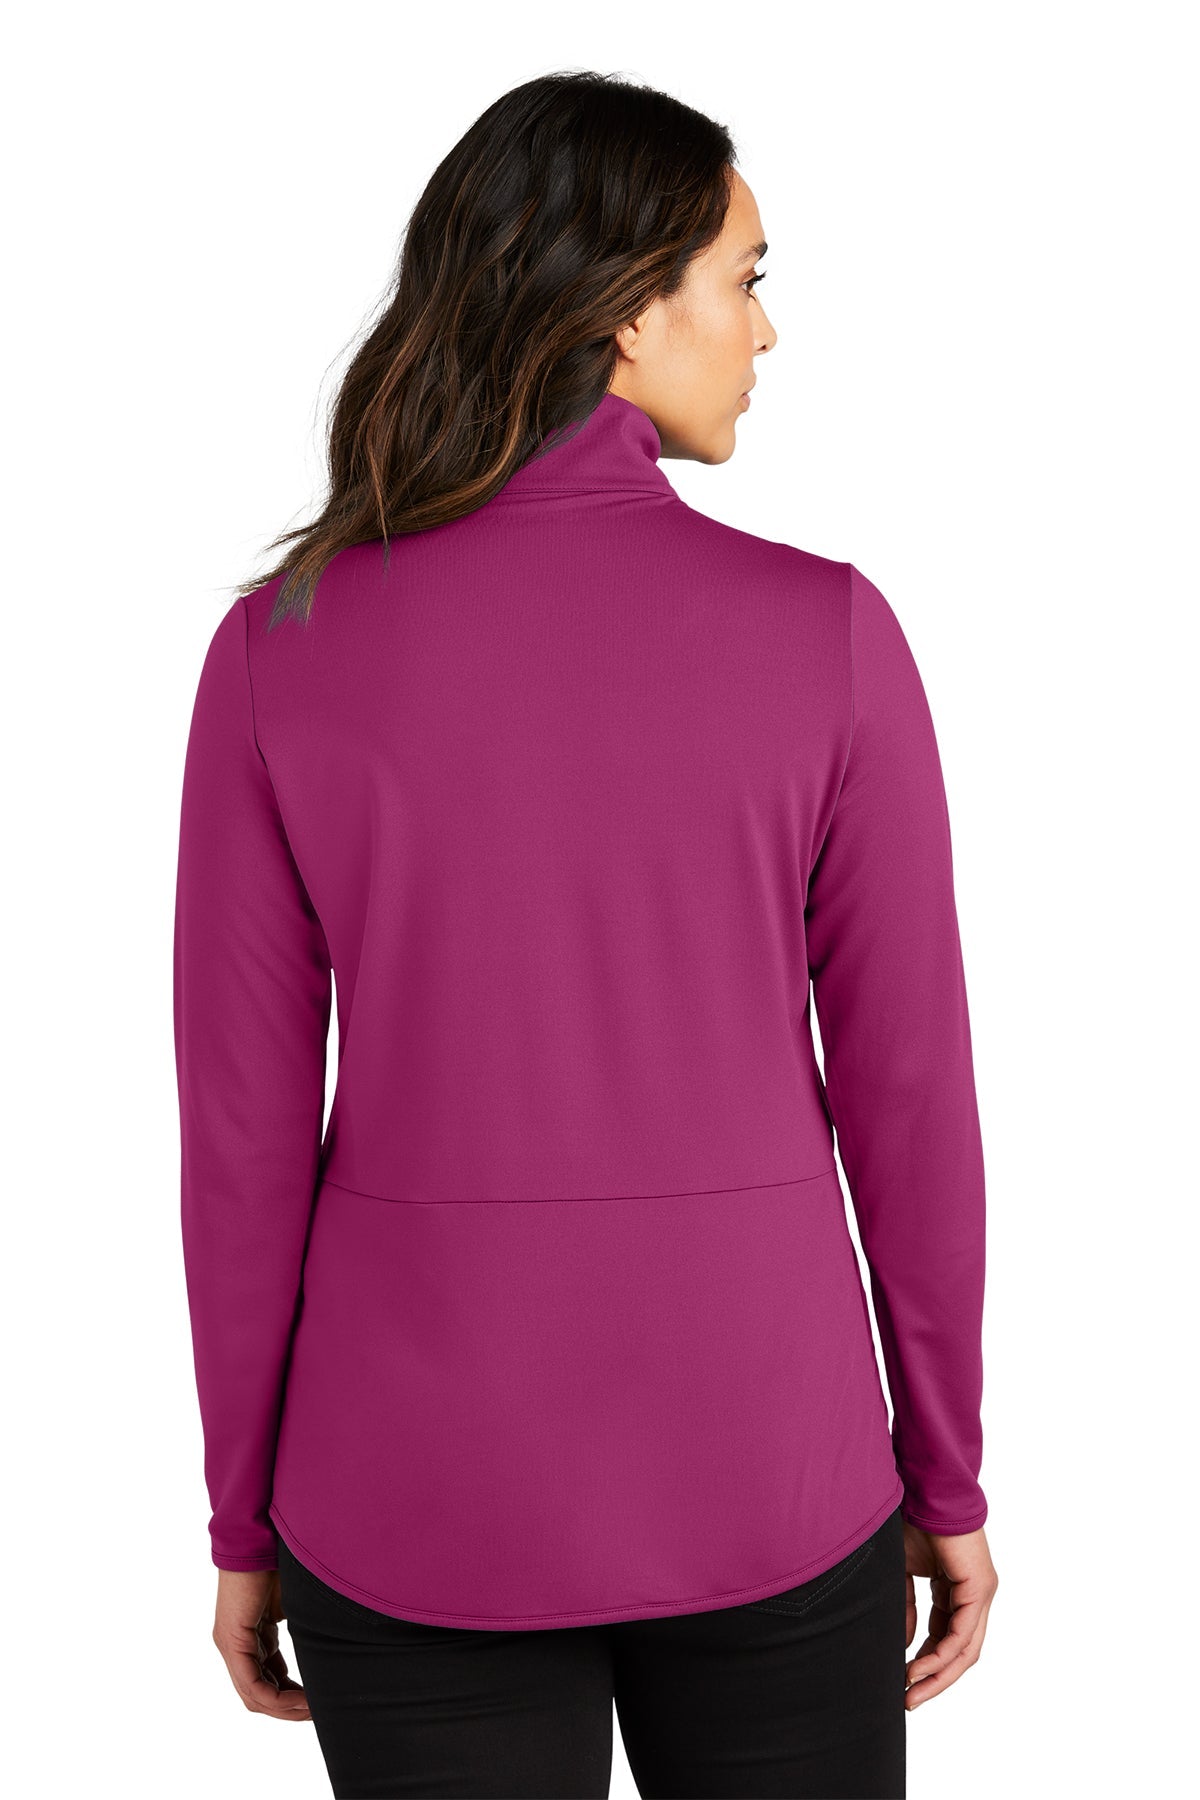 LK595 Port Authority® Ladies Accord Stretch Fleece Full-Zip